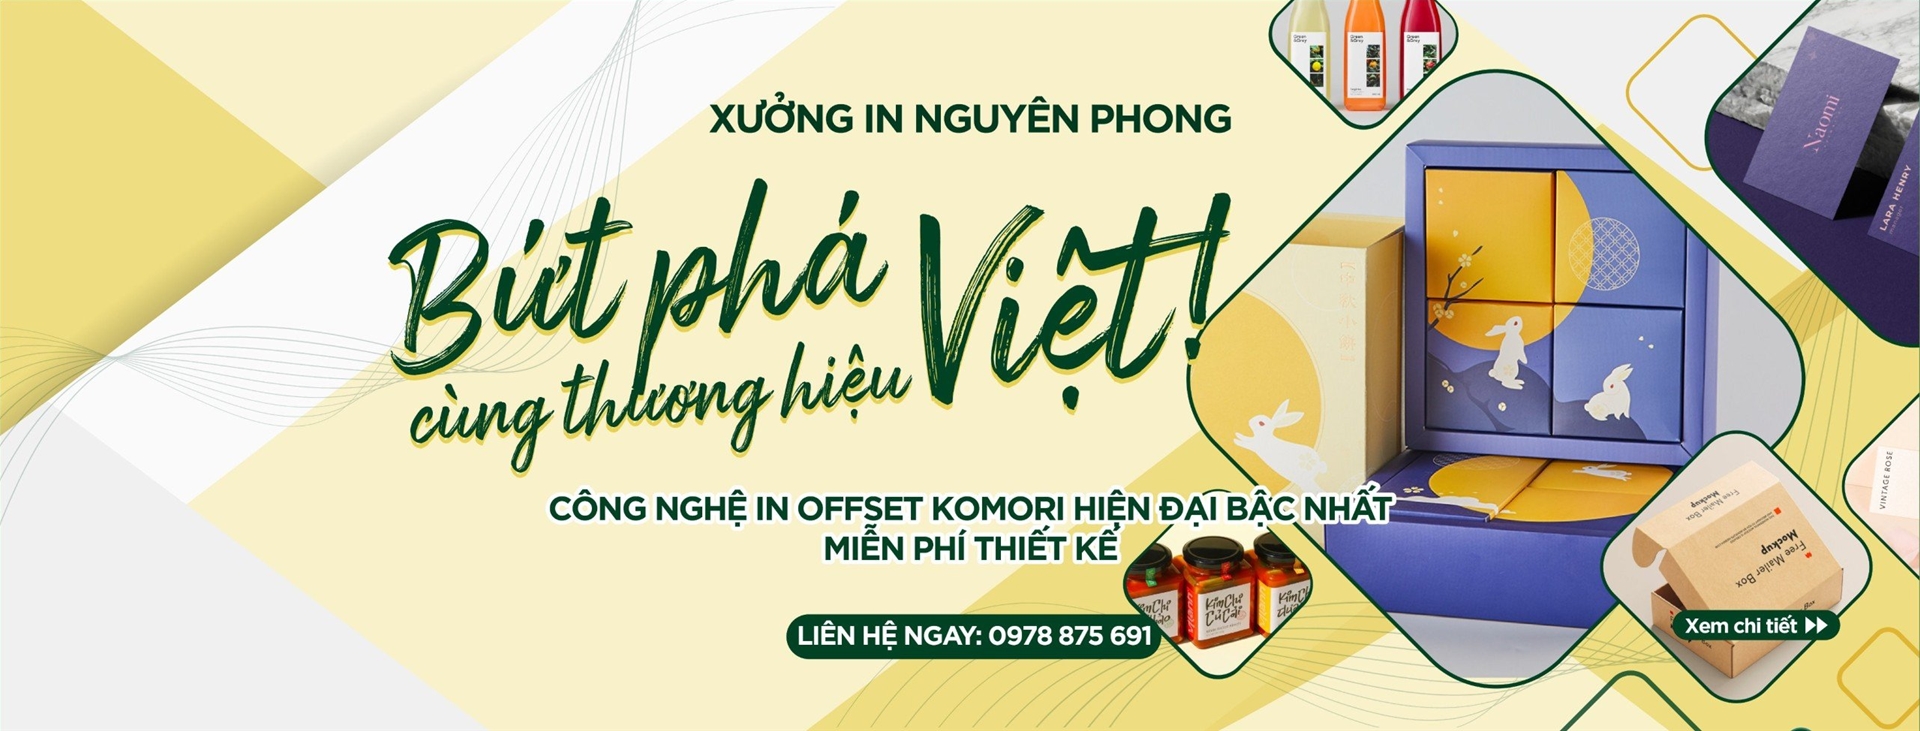 In Nguyên Phong - Bứt phá thương hiệu Việt